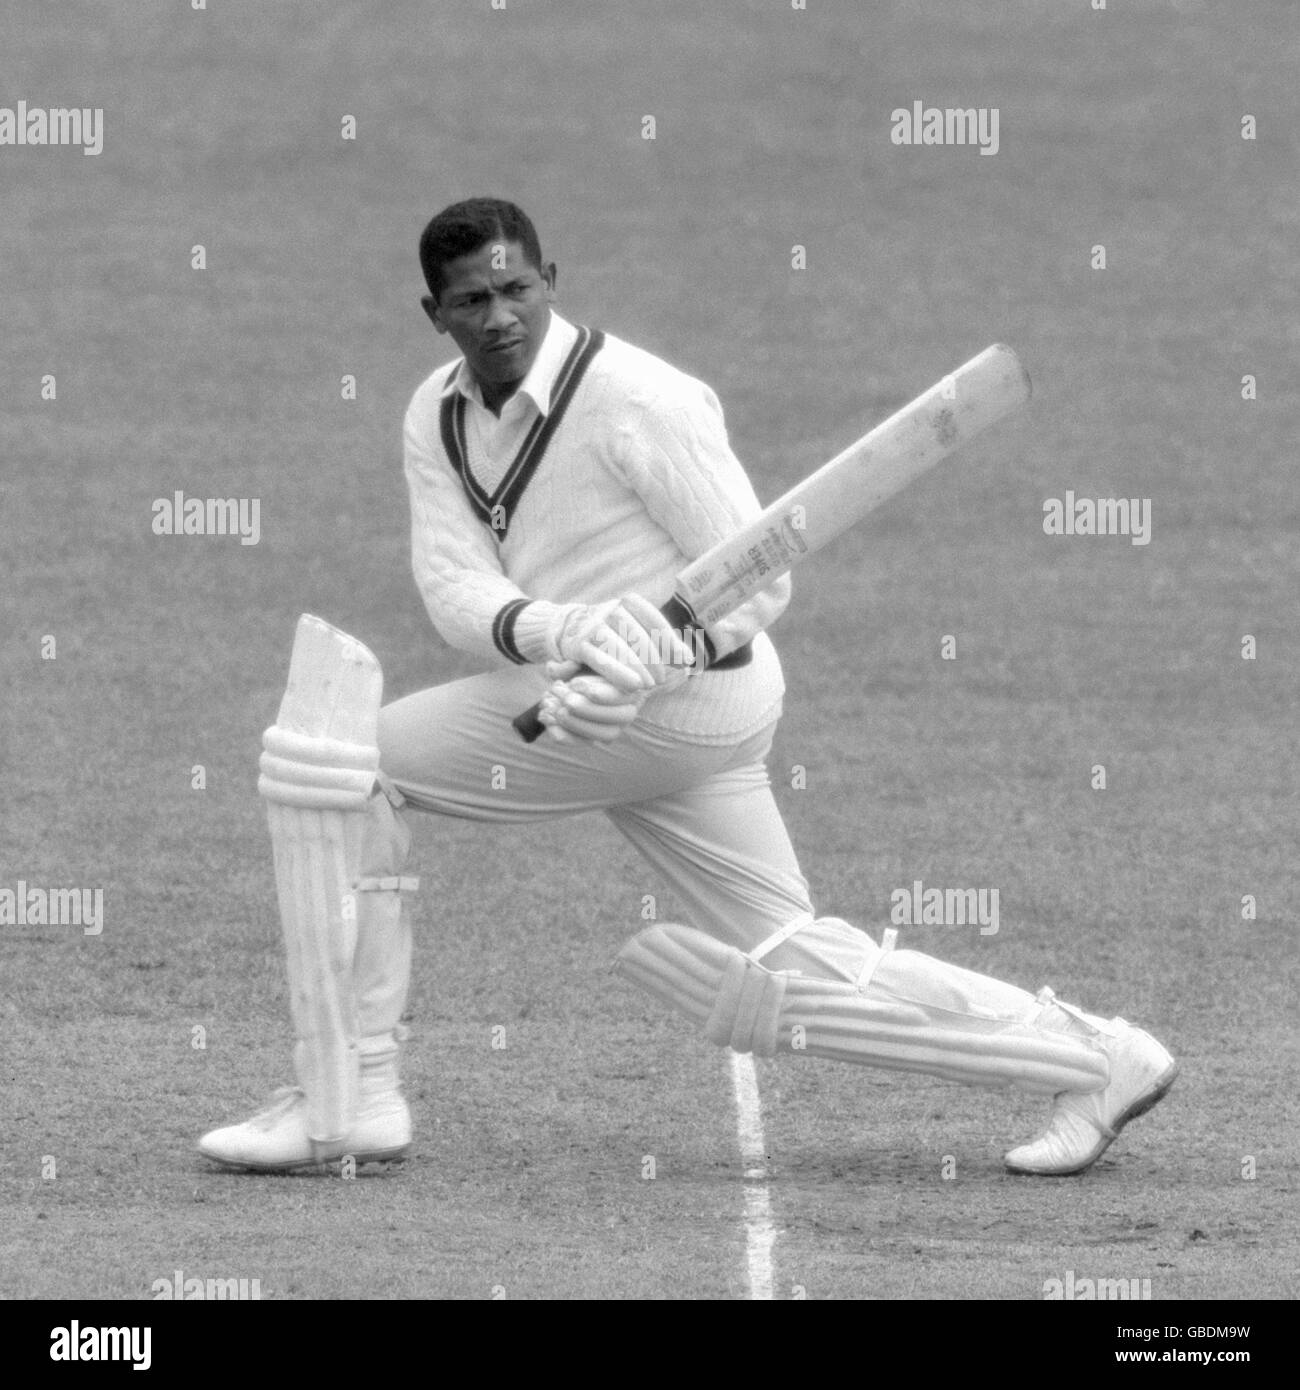 Archive-PA104232-1crop gesehen, wie hier Basil Butcher (British Guayana), ein 28-jähriger rechter Schläger und Off-Spin-Bowler mit der Cricket-Mannschaft von West Indies, geschlagen wird. Stockfoto